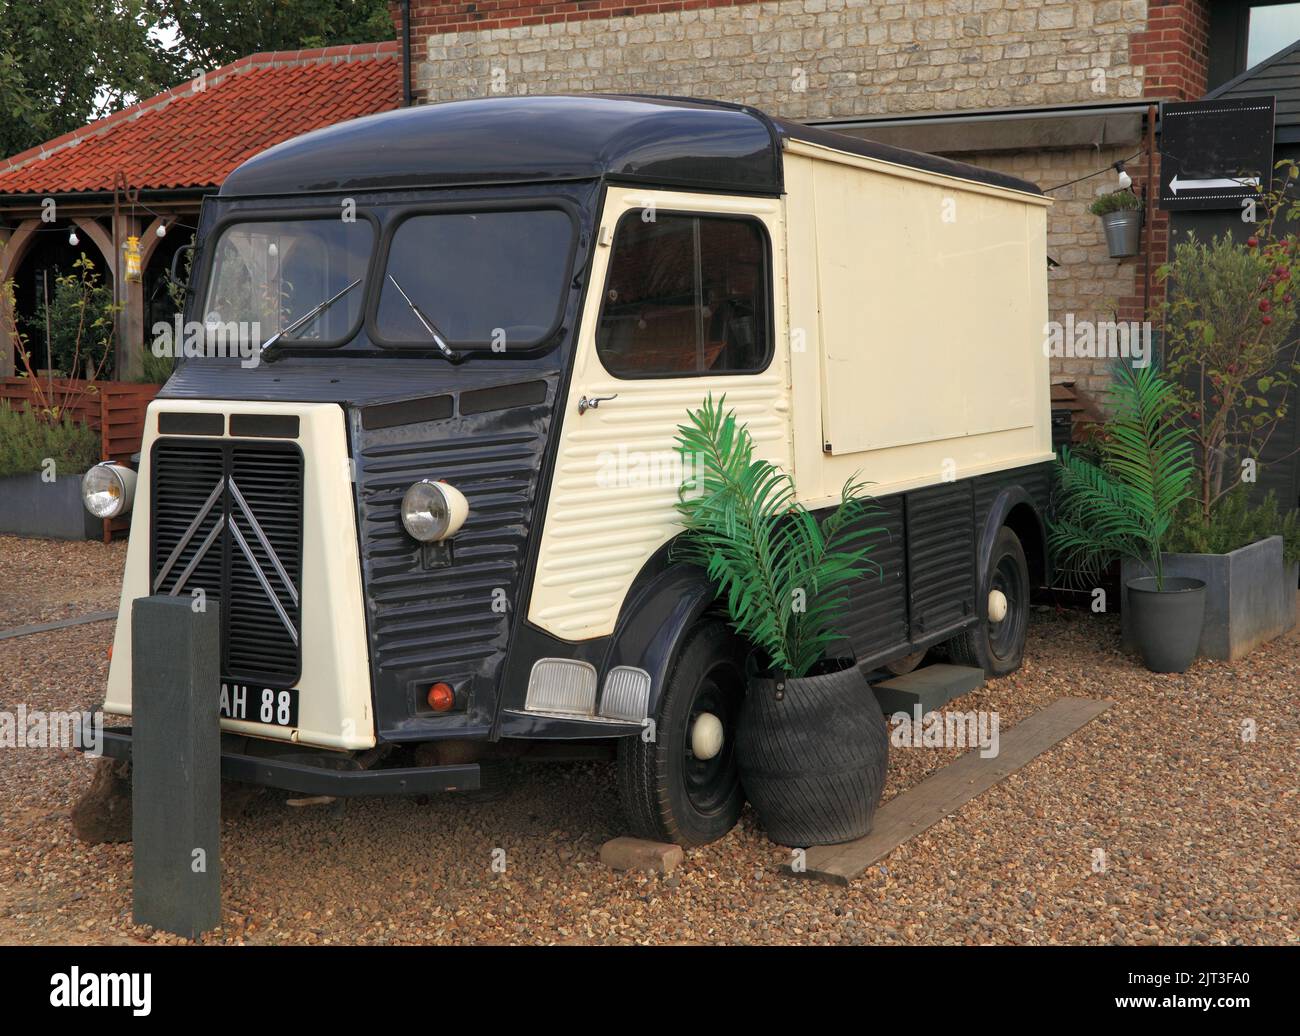 Vintage Food Delivery van, transport, Norfolk, England Stock Photo